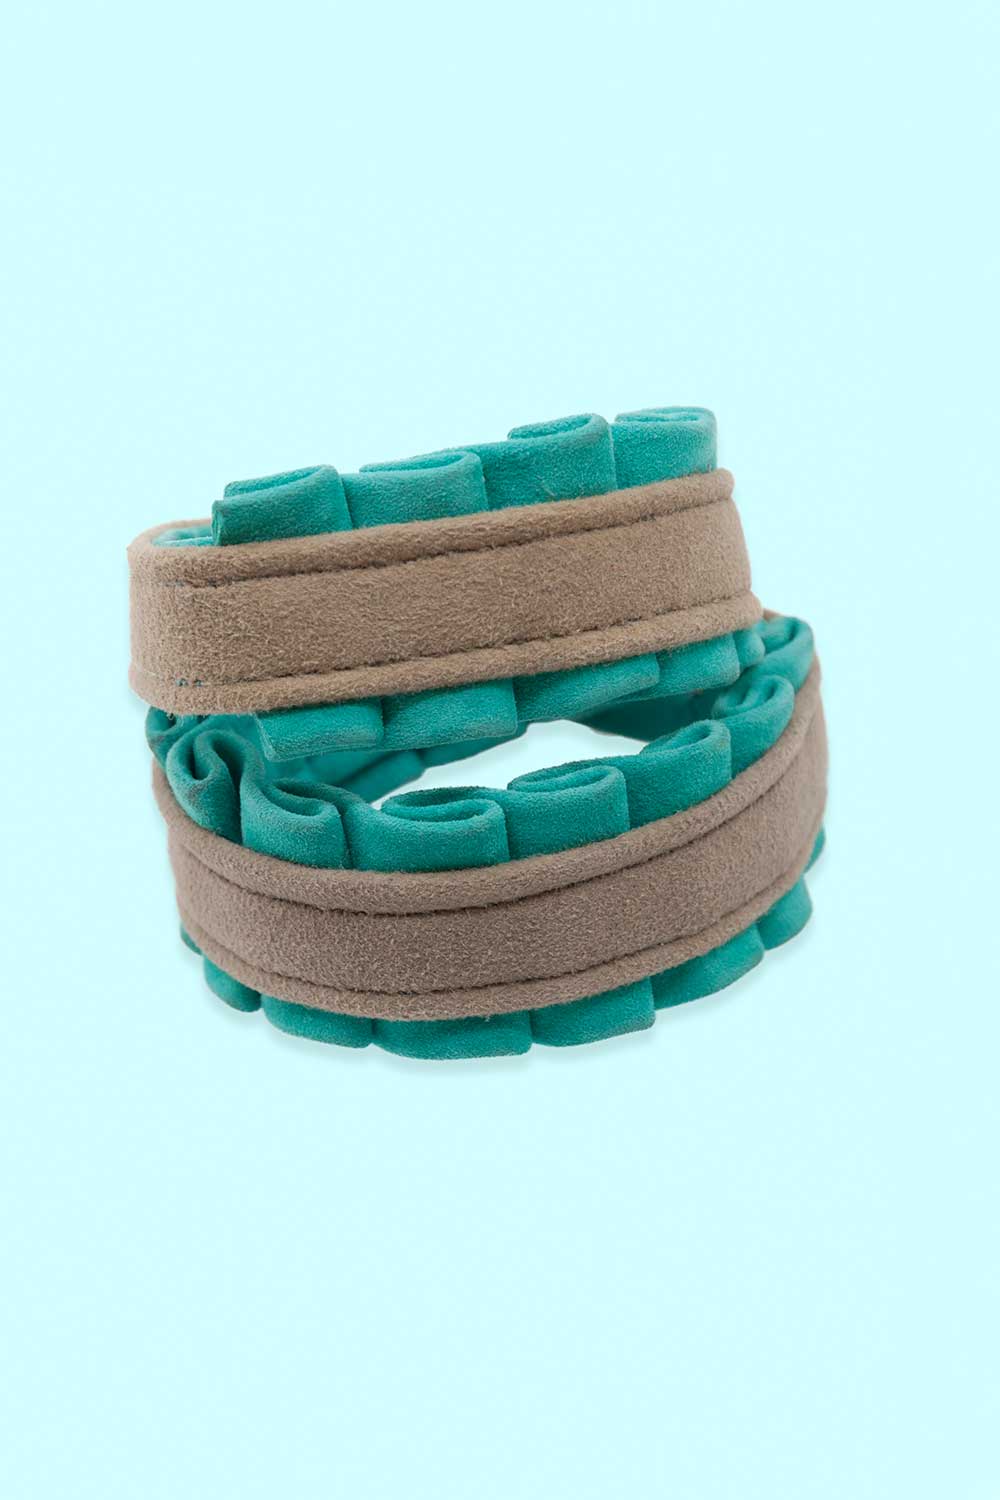 Produktbild Armband aus Leder mit Rüsche in mint von FederRock